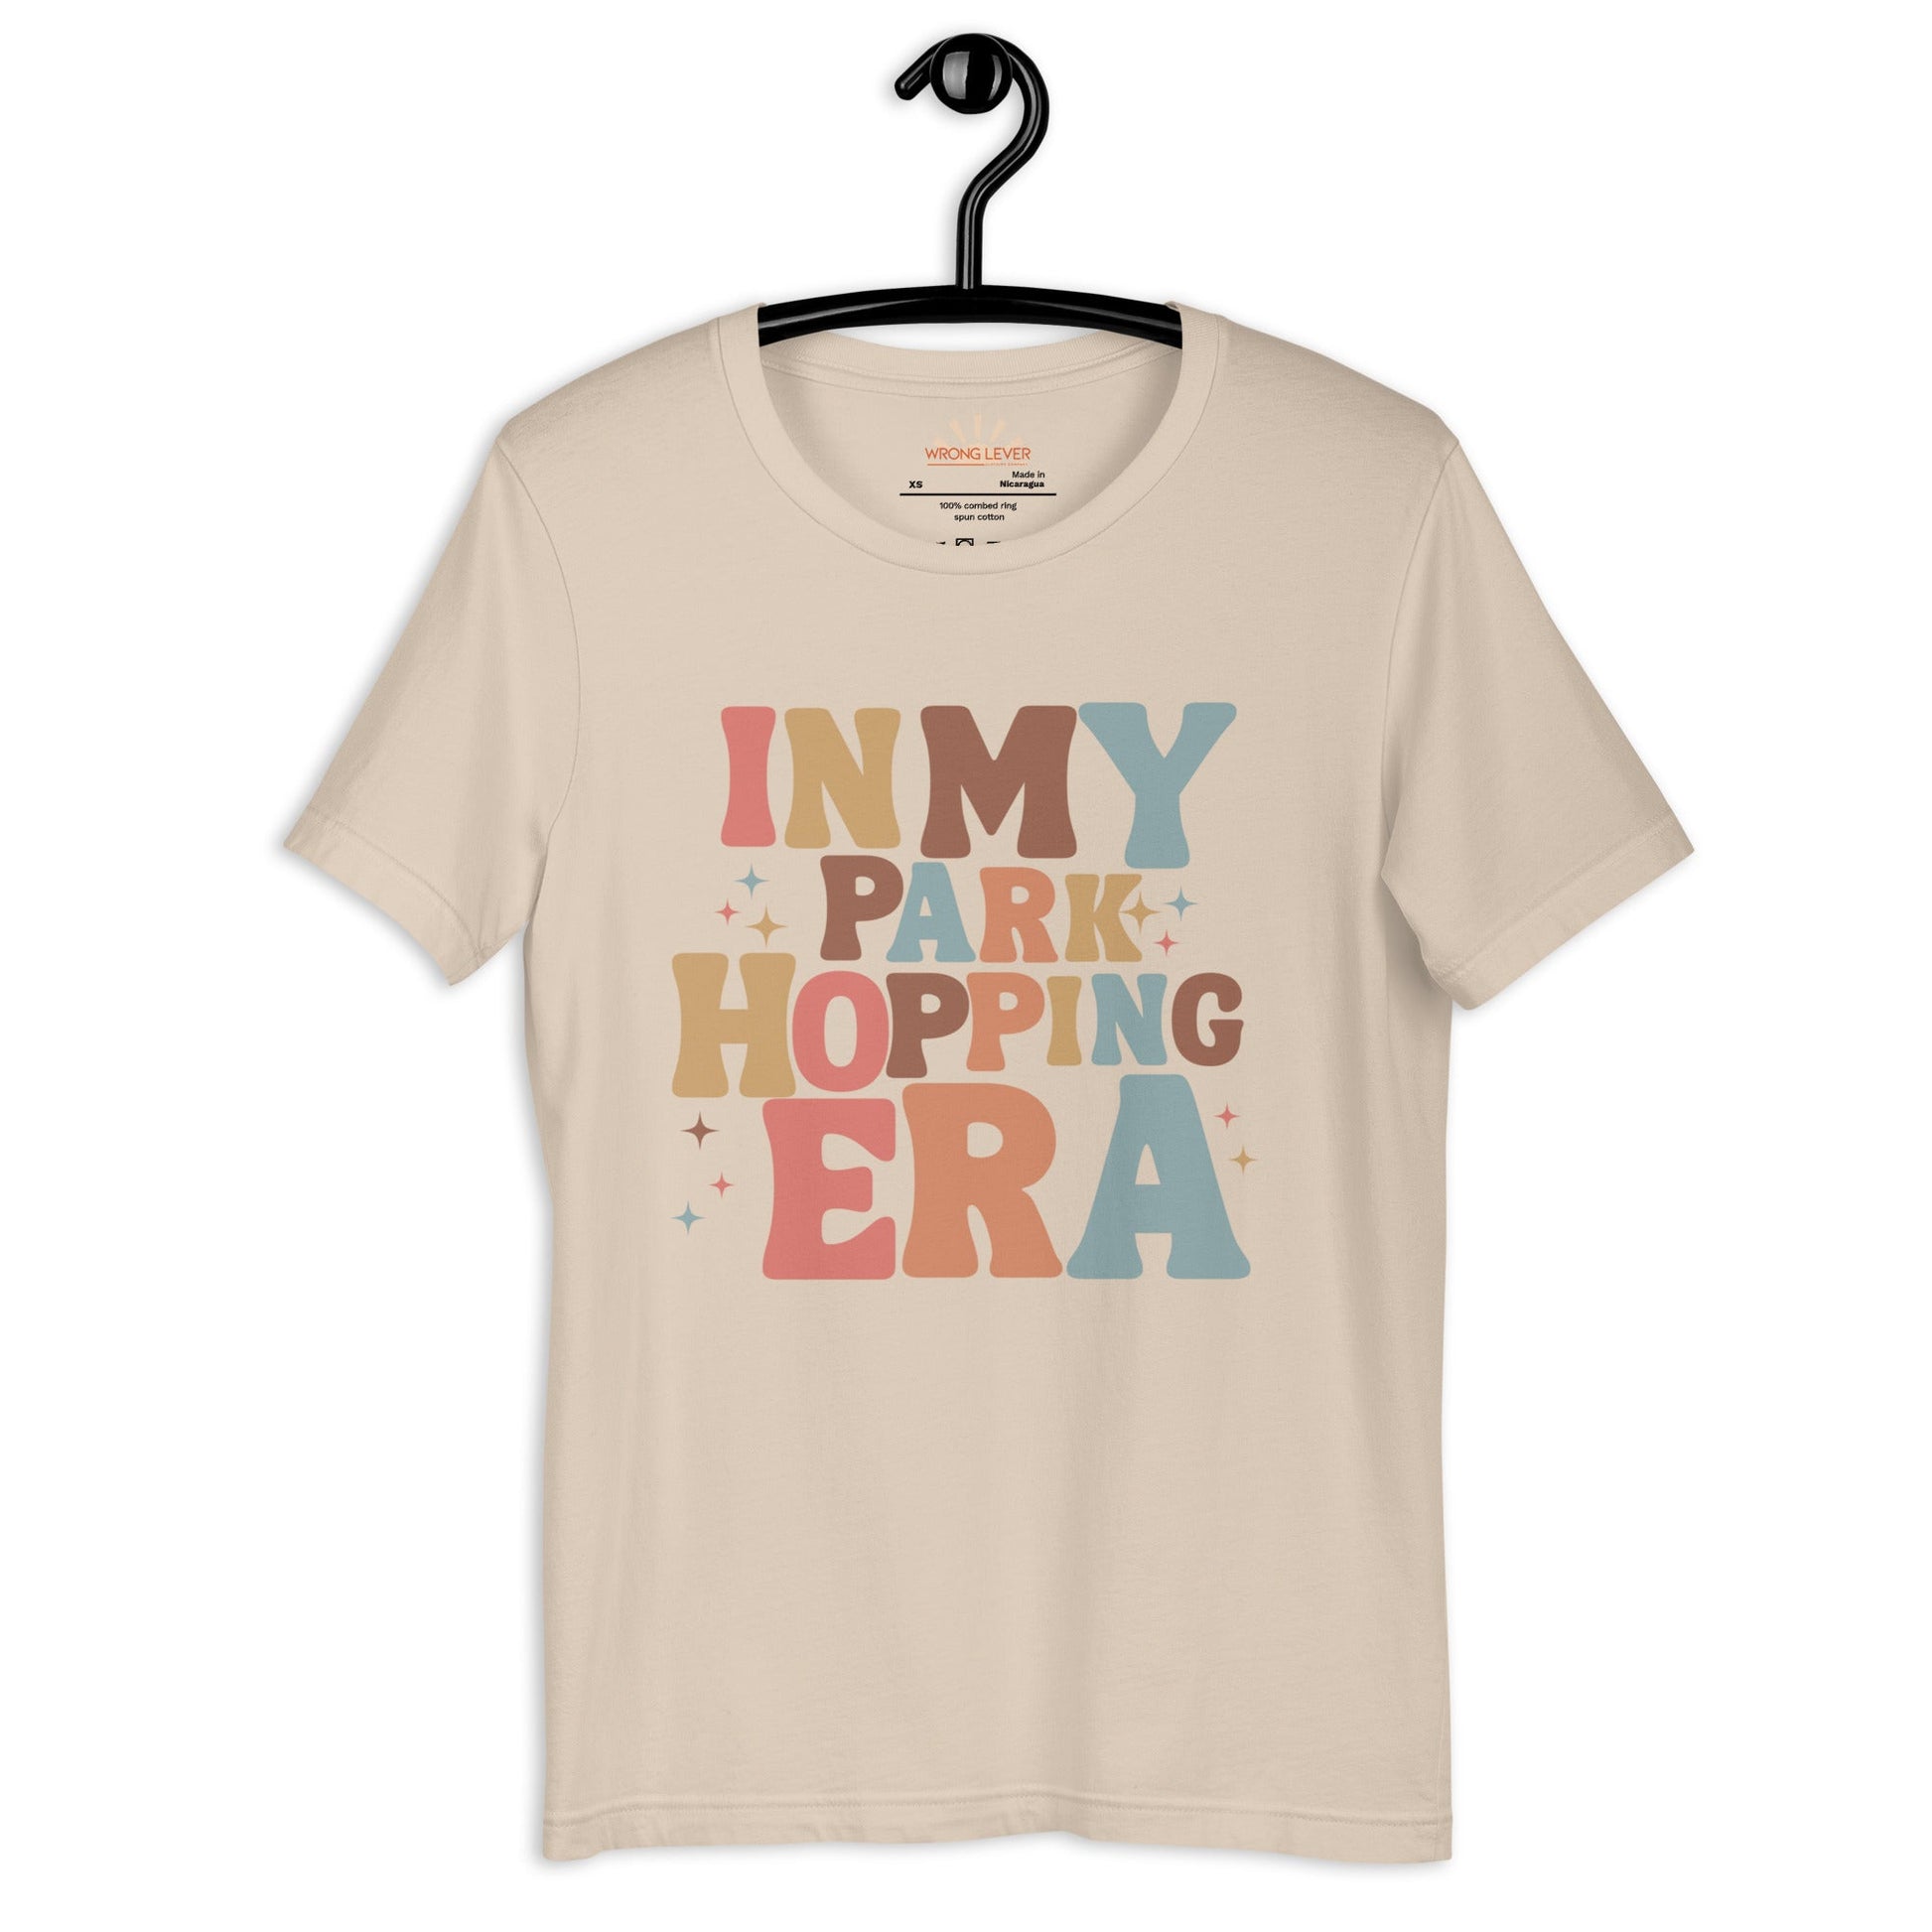 Park Hopping Era Unisex t-shirt cosplaydisney adultAdult T-ShirtWrong Lever Clothing